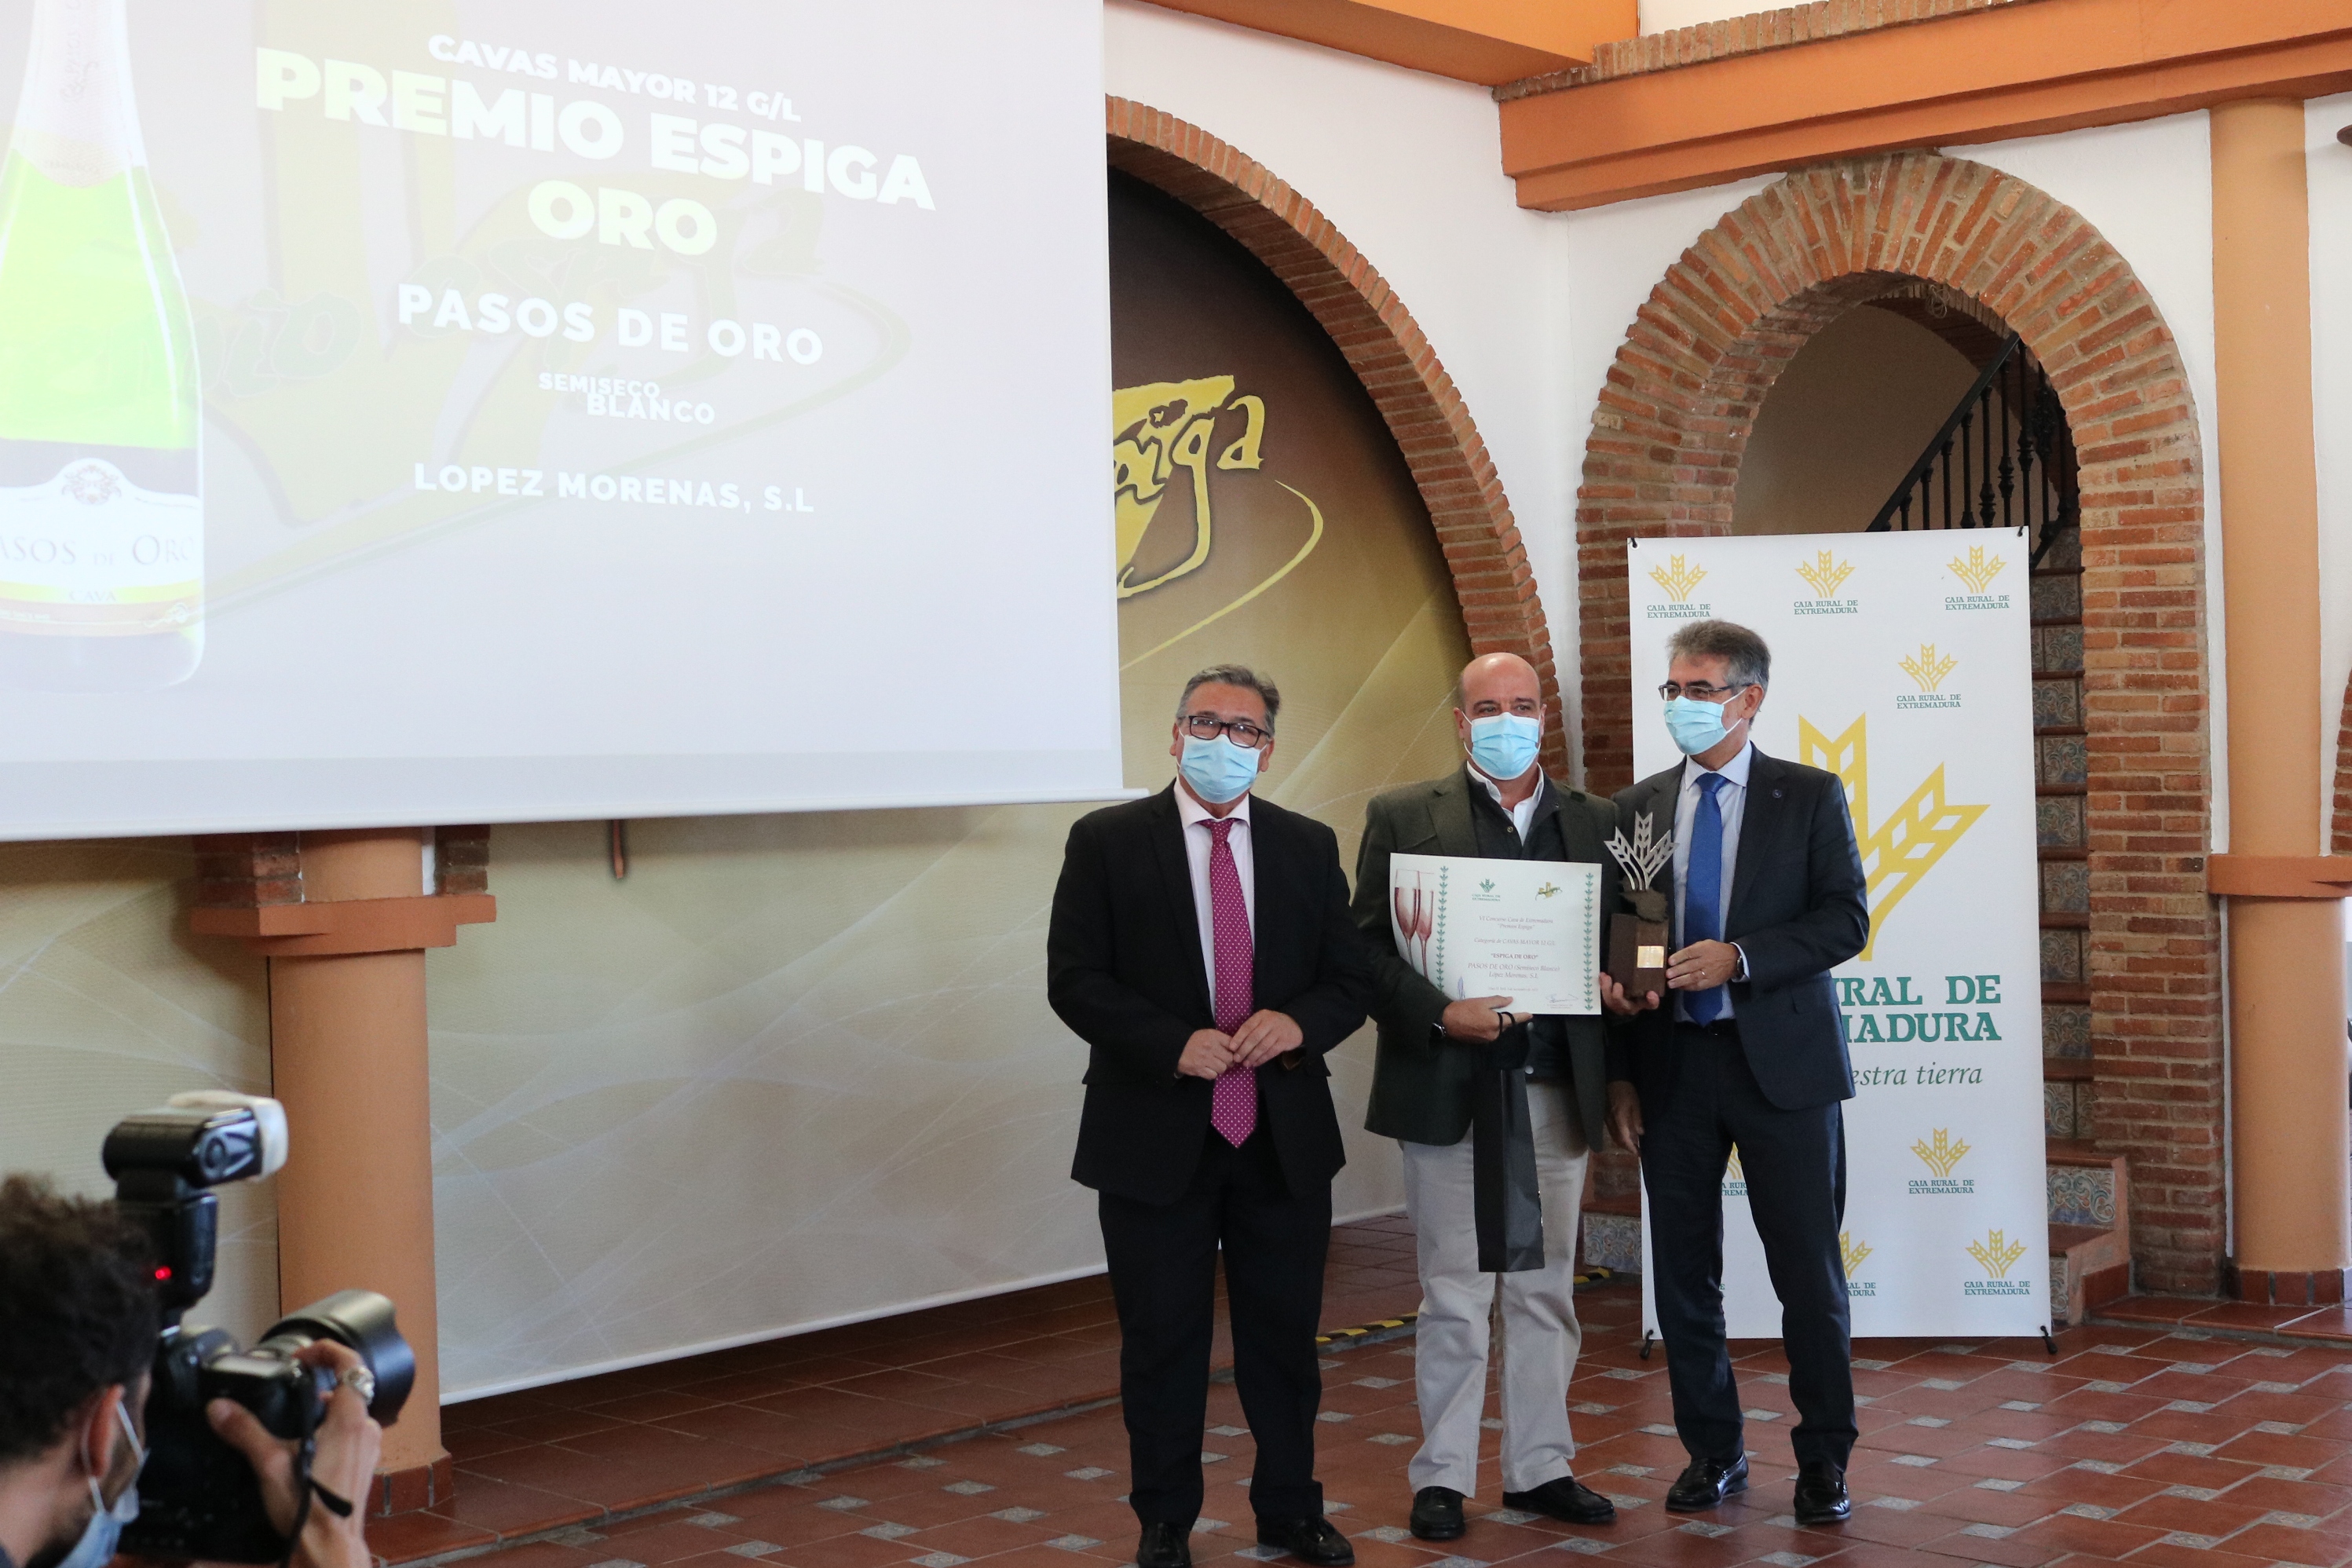 Premio Espiga Oro Cava Mayor de 12 gr/l a Pasos de Oro, de López Morenas